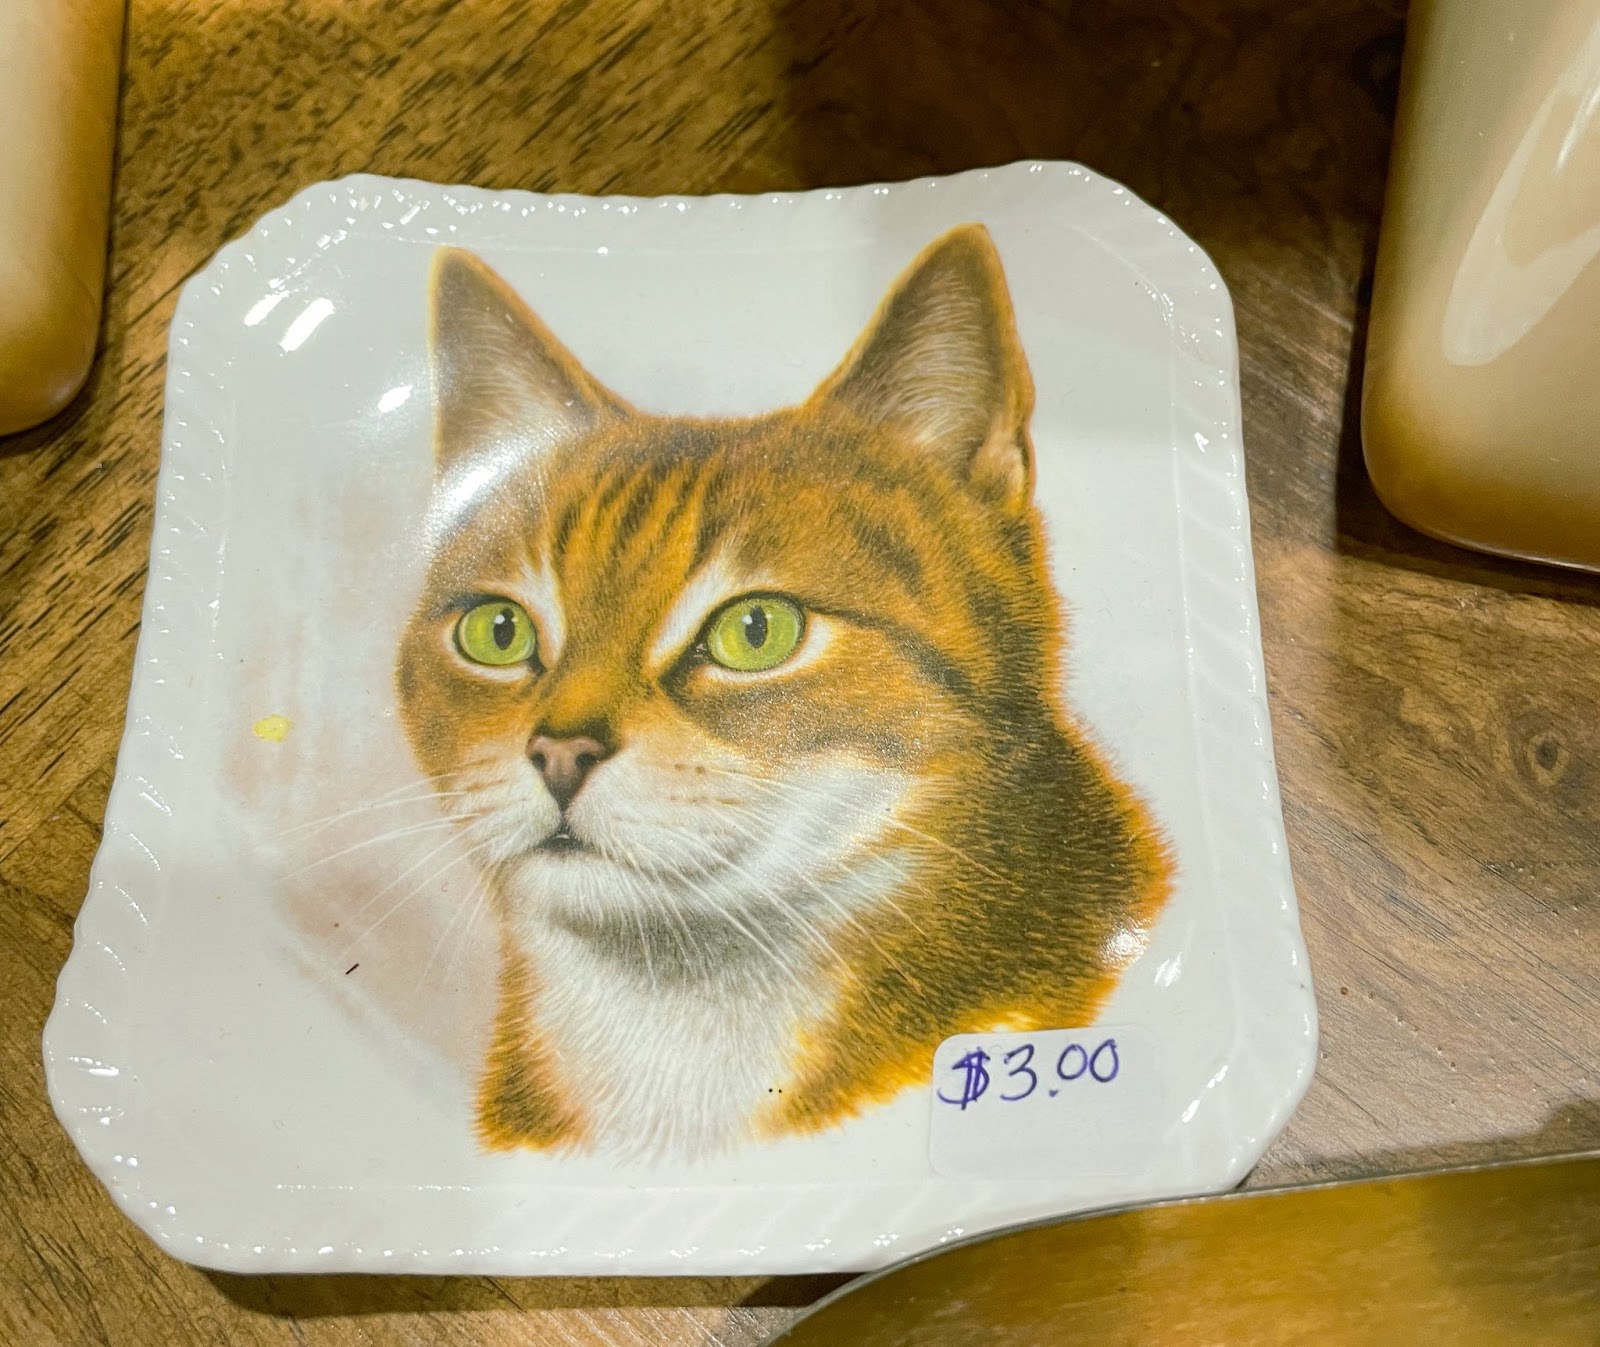 A ceramic cat plate